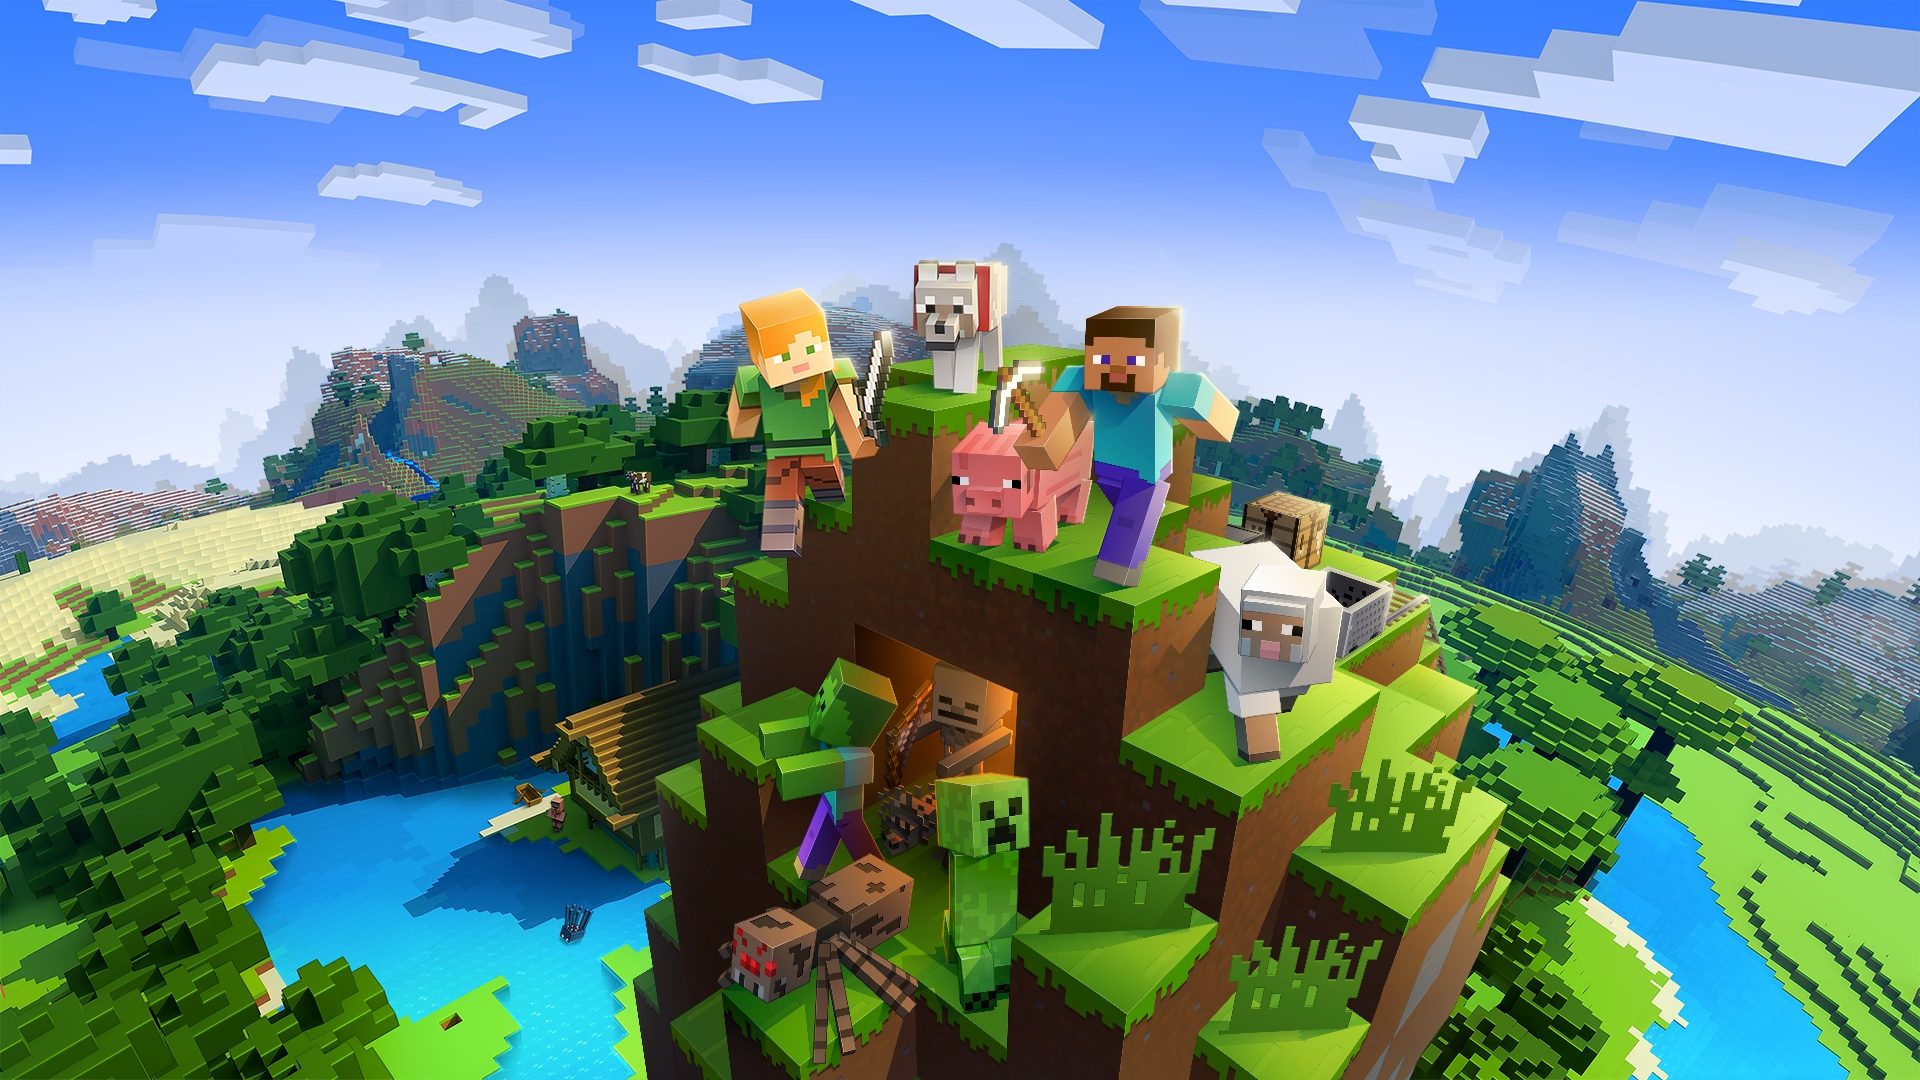 ベスト サバイバル ゲーム: Minecraft の世界には複数の人や動物が登場します